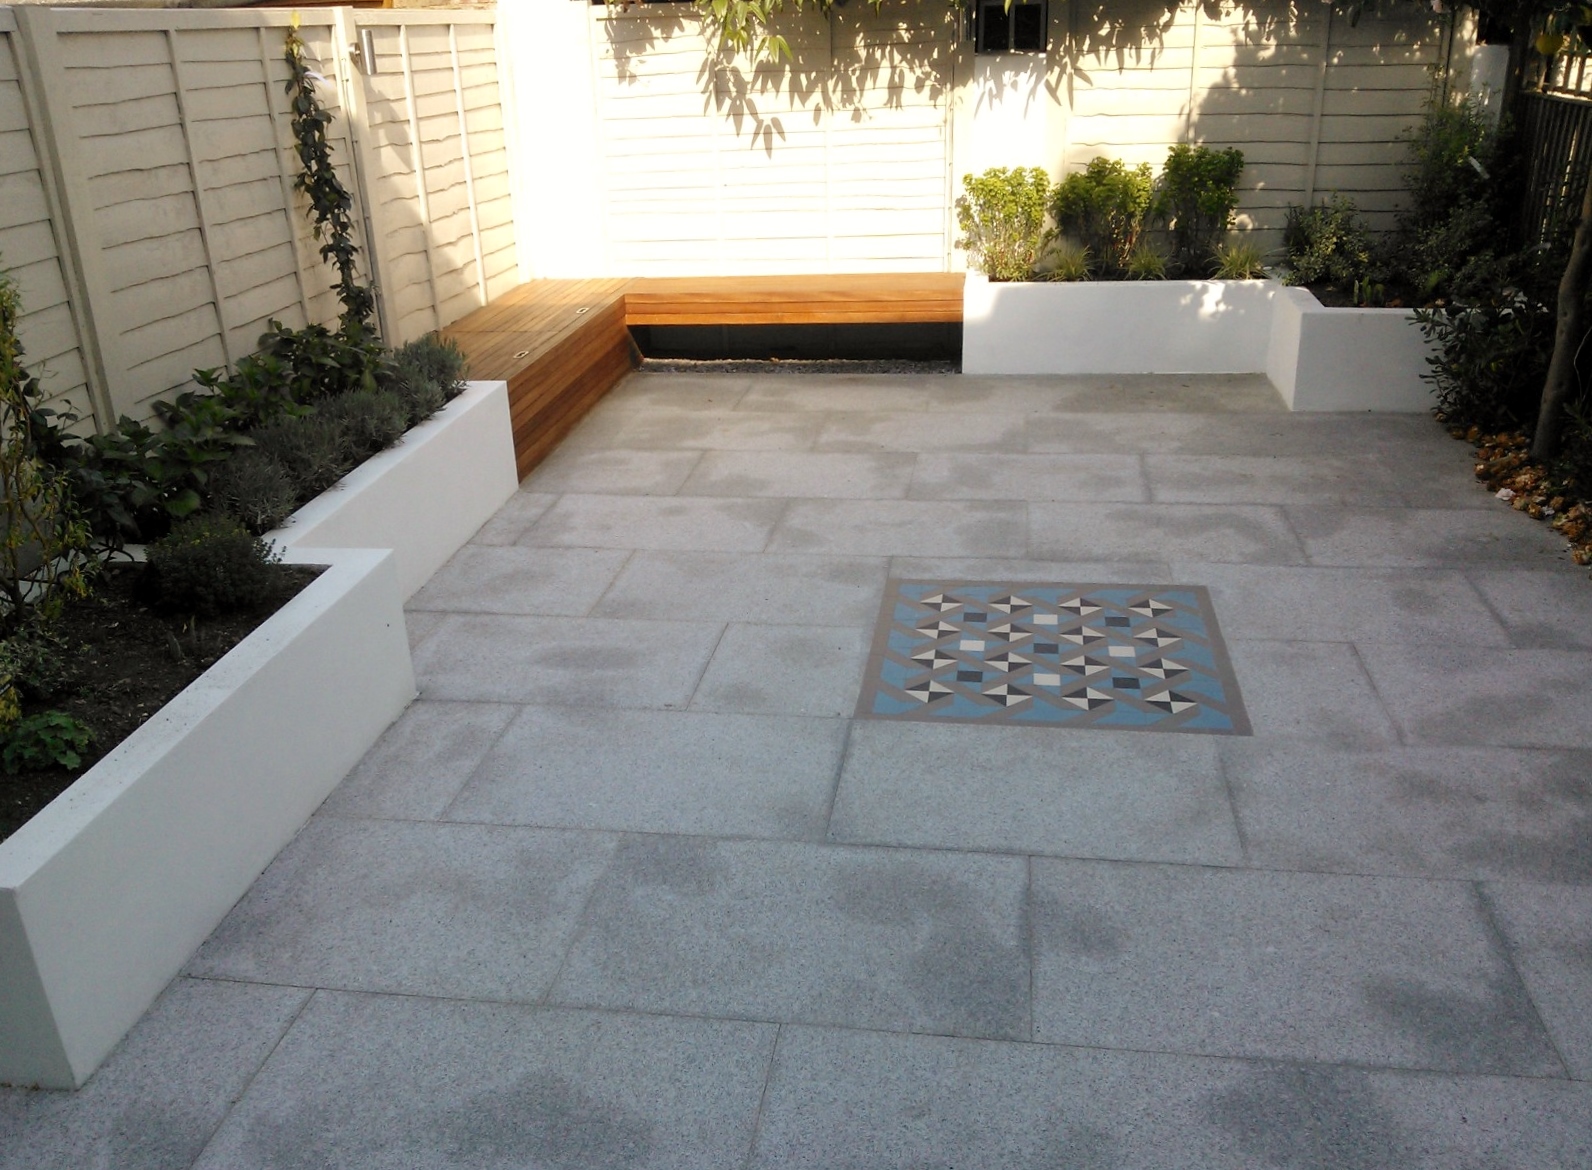  garden tiles design